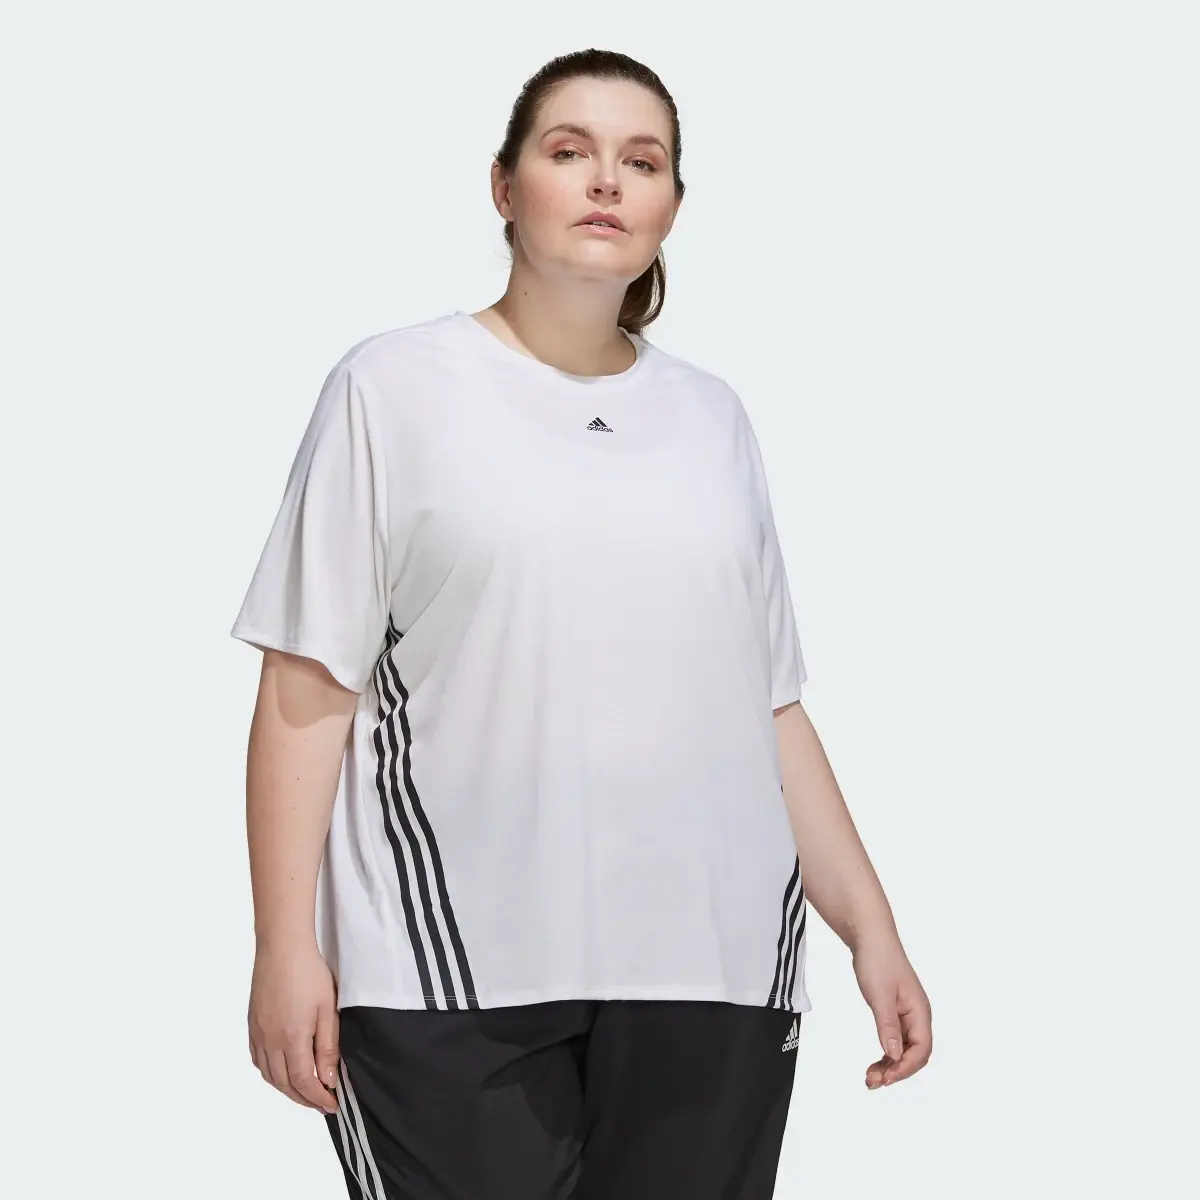 Adidas Train Icons 3-Stripes T-Shirt (Plus Size). 2